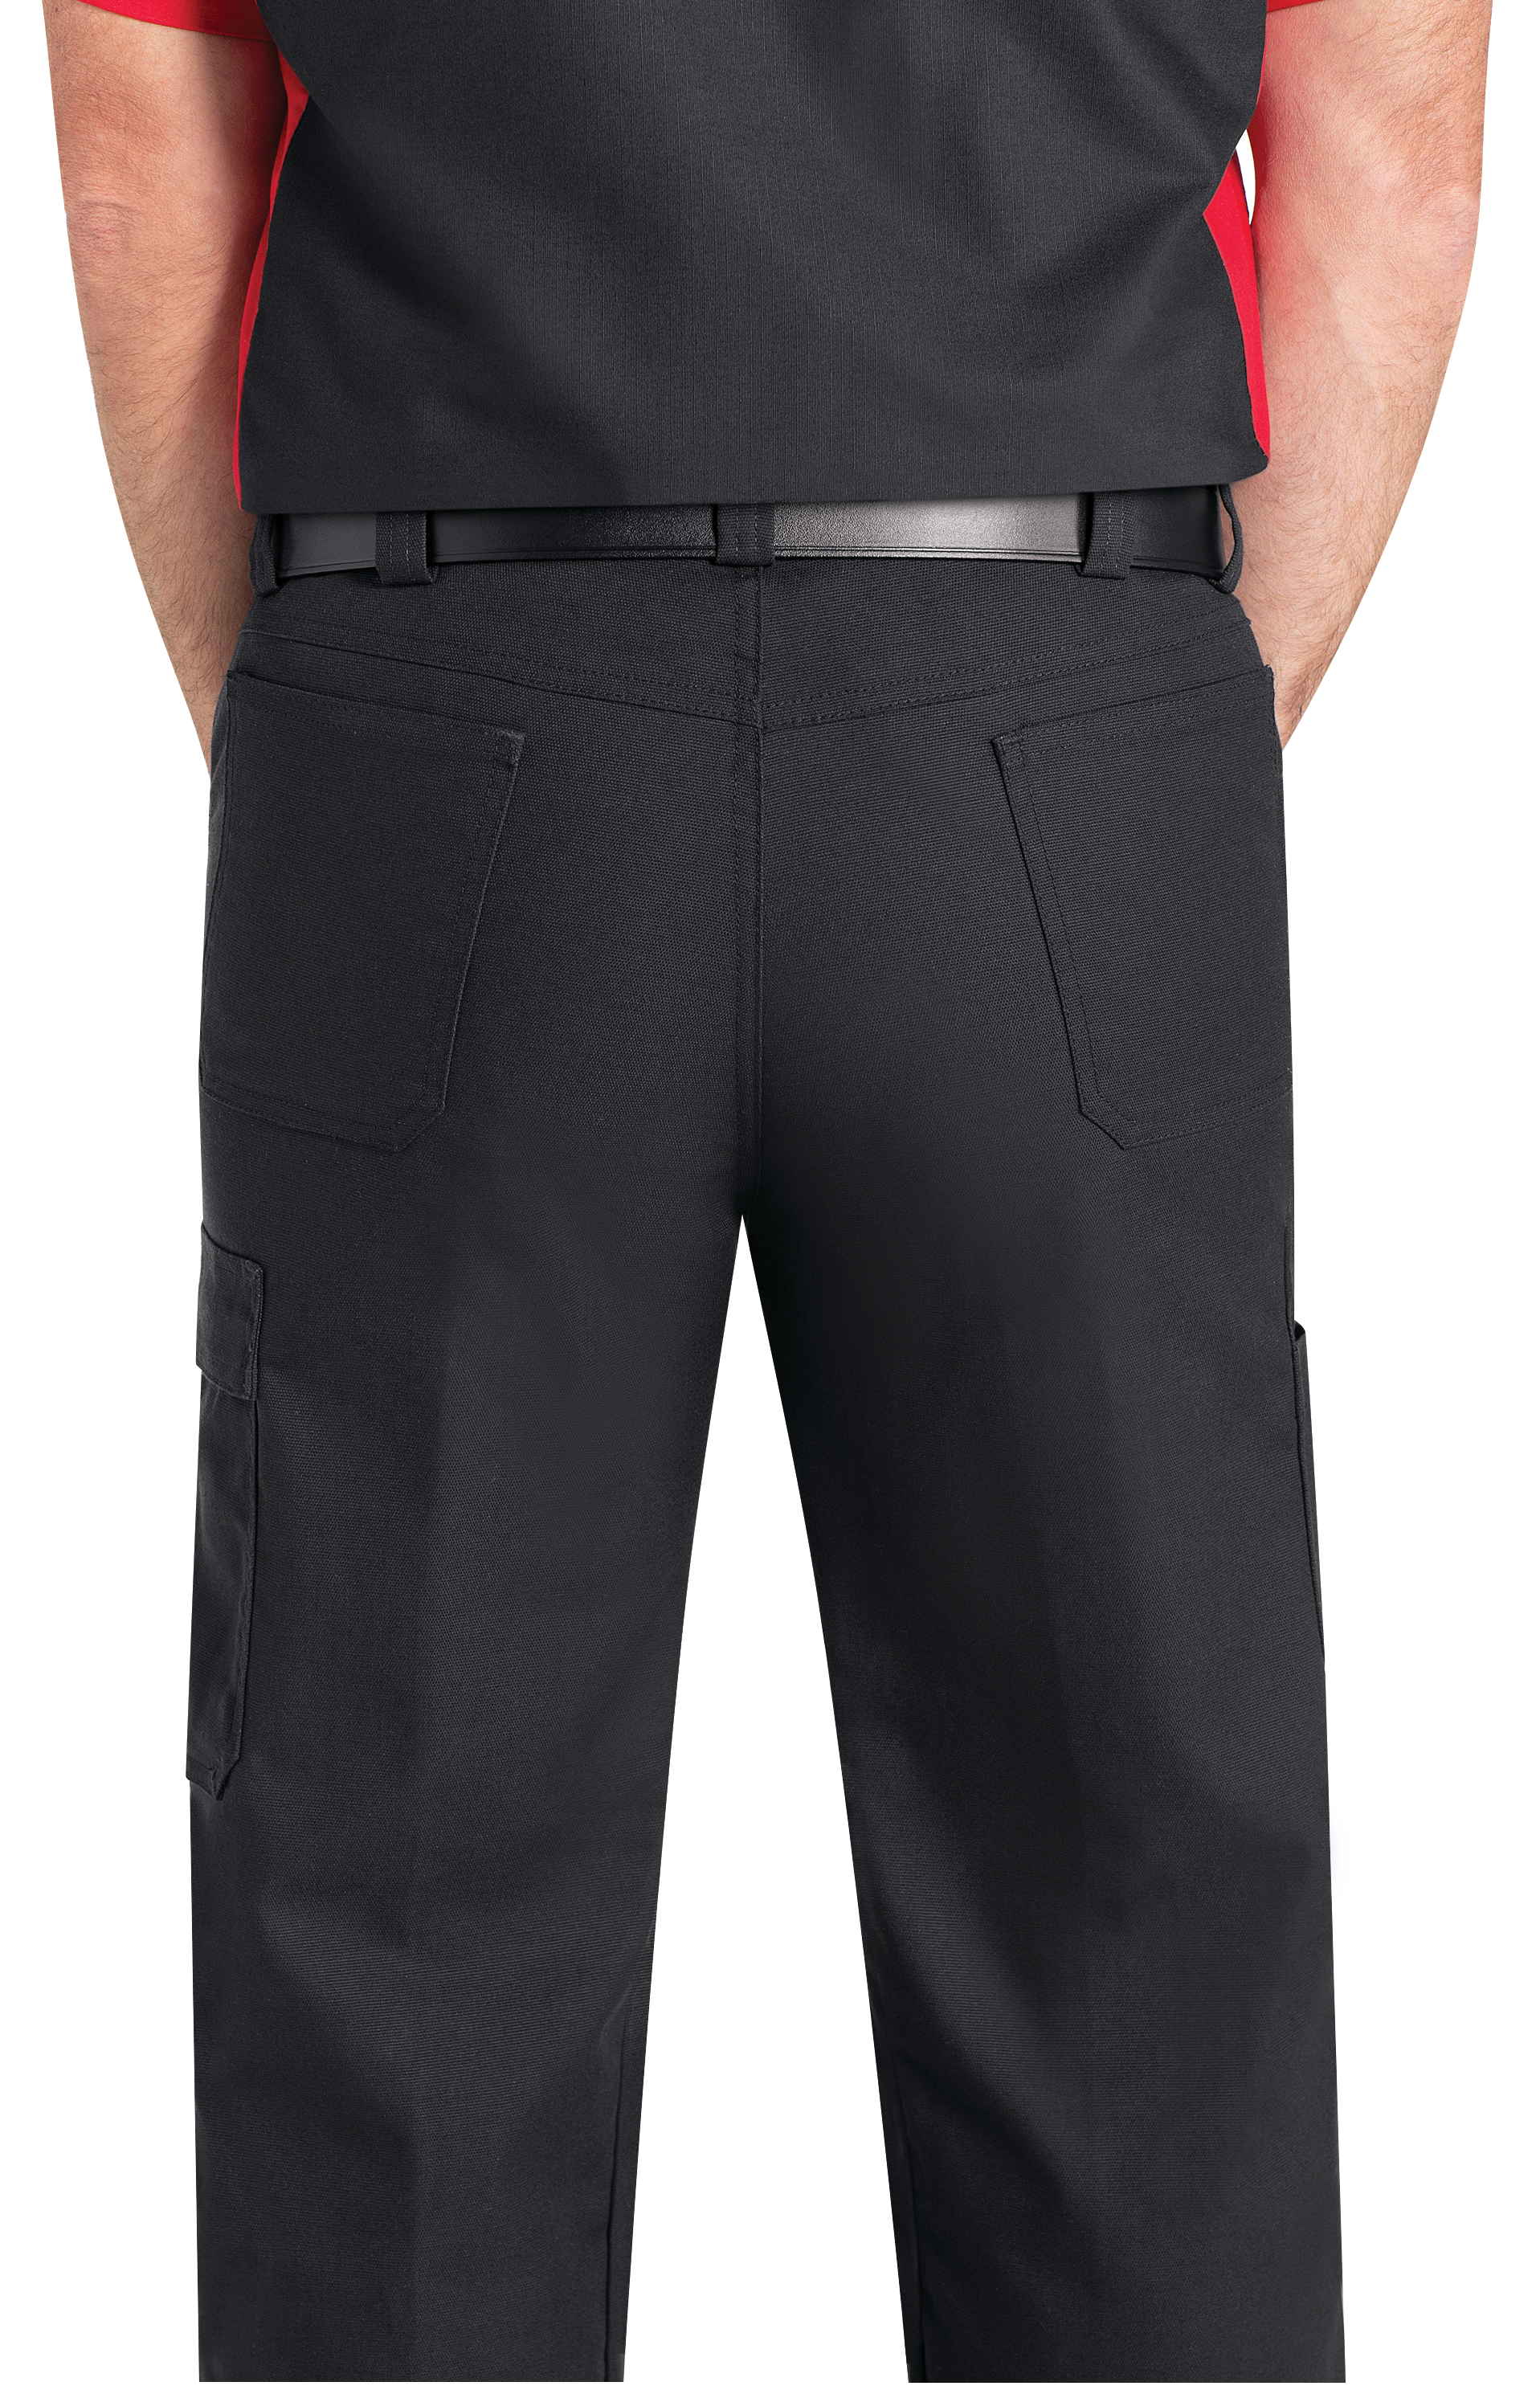 Red Kap Durable Pants Performance Shop Heavy Duty Men's Industrial Uniform 